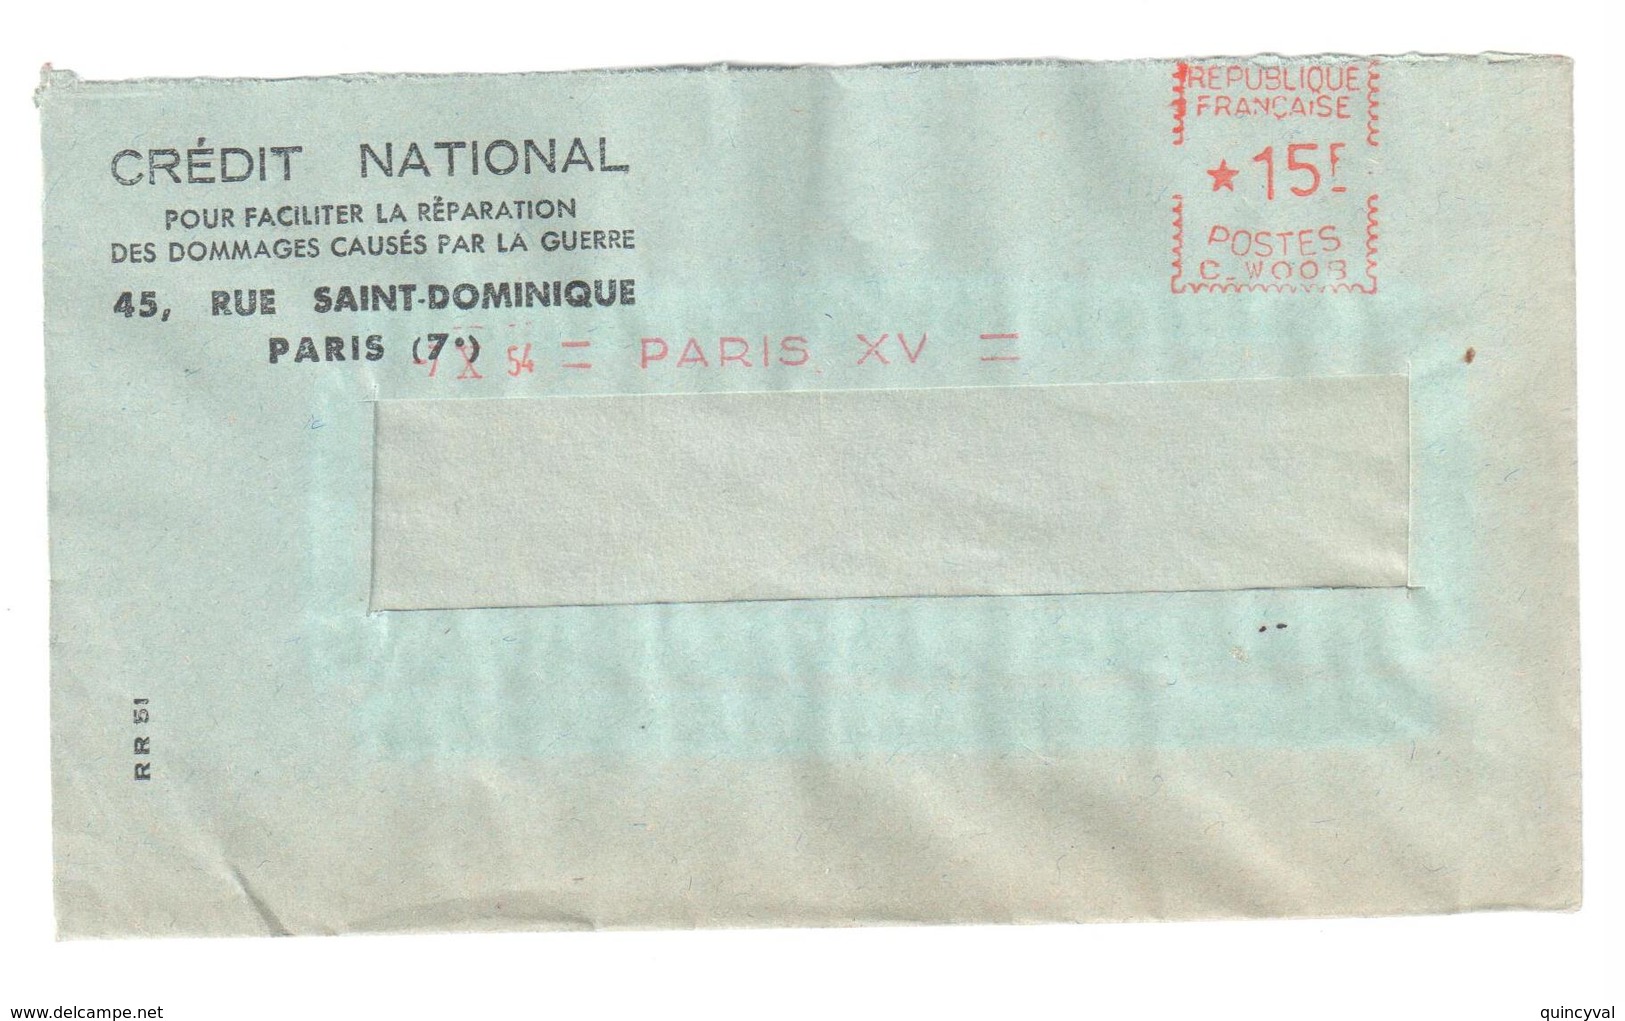 PARIS XV Lettre CREDIT NATIONAL Ob 7 10 1954 Lettre Simple EMA REMPLACEMENT C W 008 15 F - EMA ( Maquina De Huellas A Franquear)